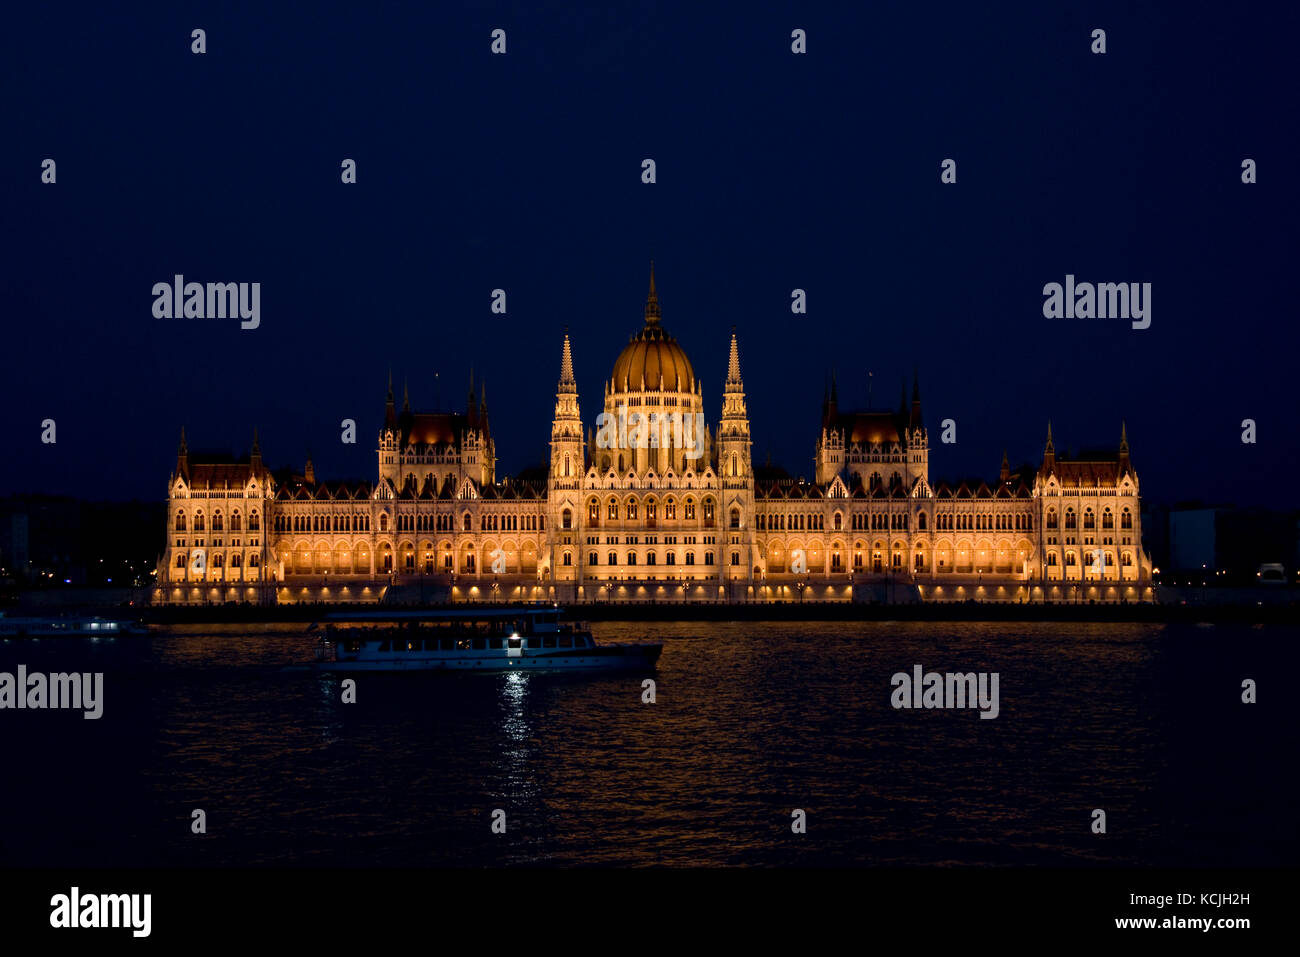 Une vue nocturne du bâtiment du Parlement hongrois sur le Danube à Budapest avec un bateau de croisière touristique sur le fleuve passant. Banque D'Images